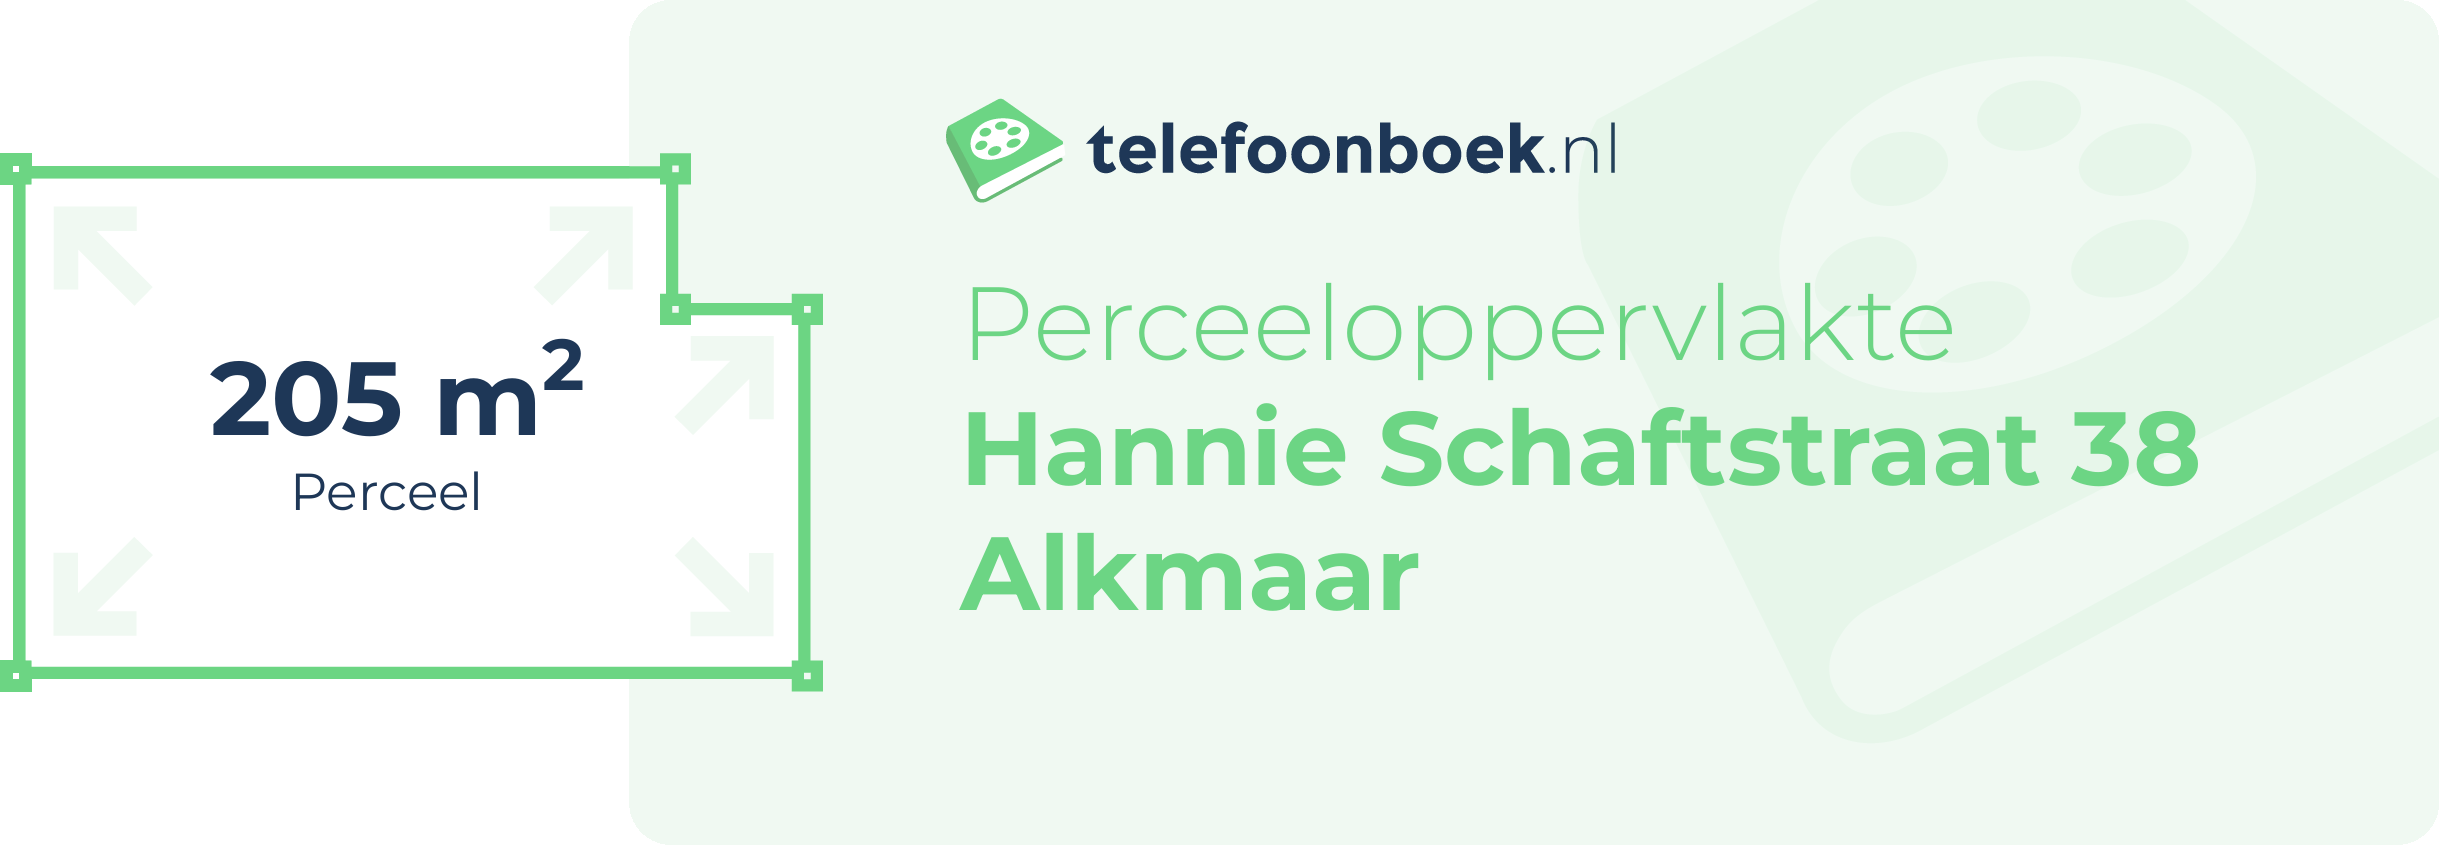 Perceeloppervlakte Hannie Schaftstraat 38 Alkmaar